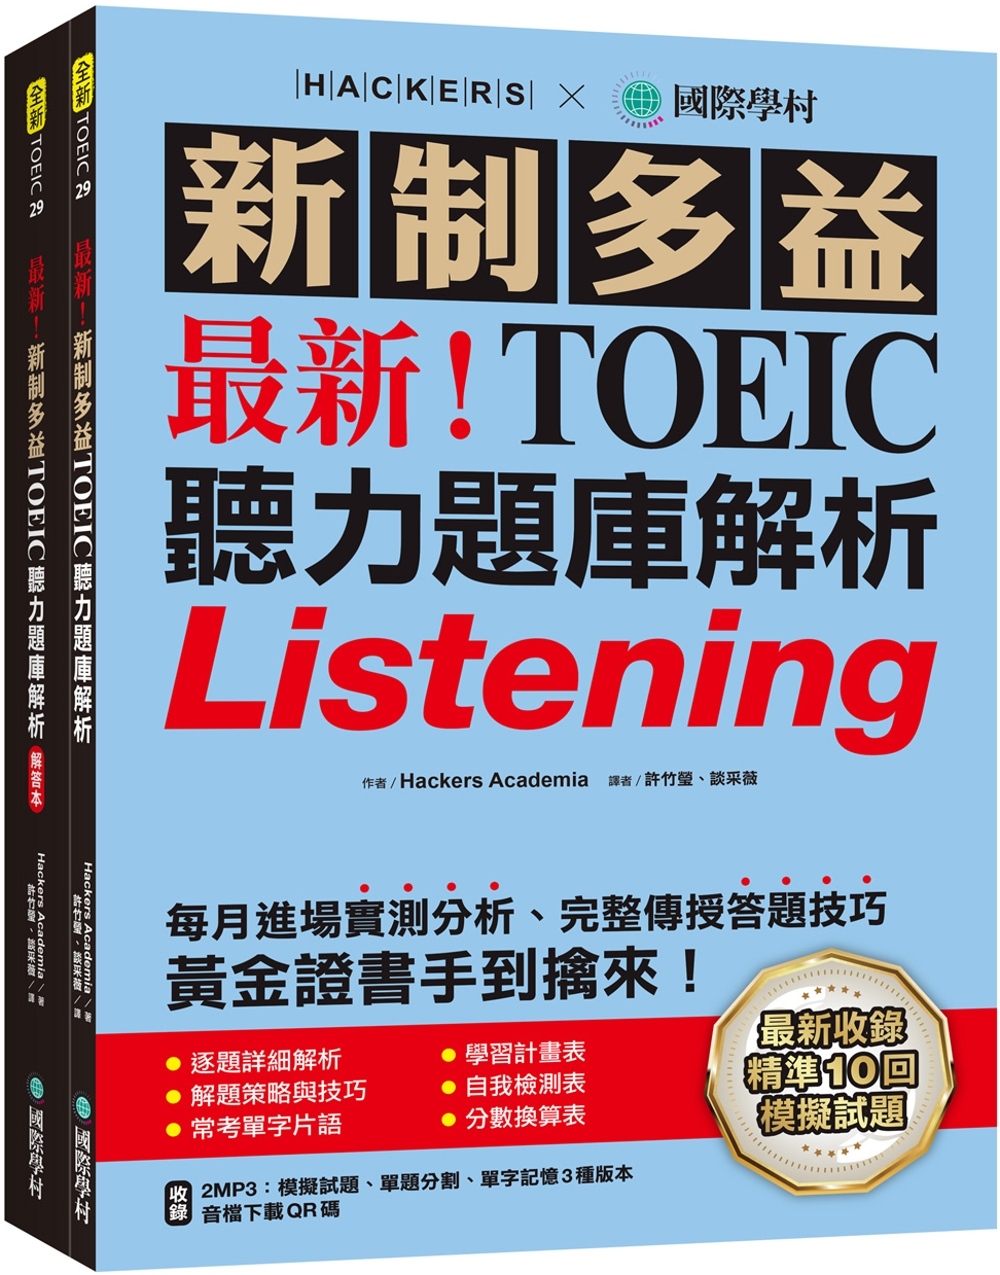 最新!新制多益TOEIC聽力題庫解析：最新收錄精準 10 回模擬試題!完整反映命題趨勢、大幅提升應考能力，黃金證書手到擒來!(雙書裝+2MP3+音檔下載QR碼)